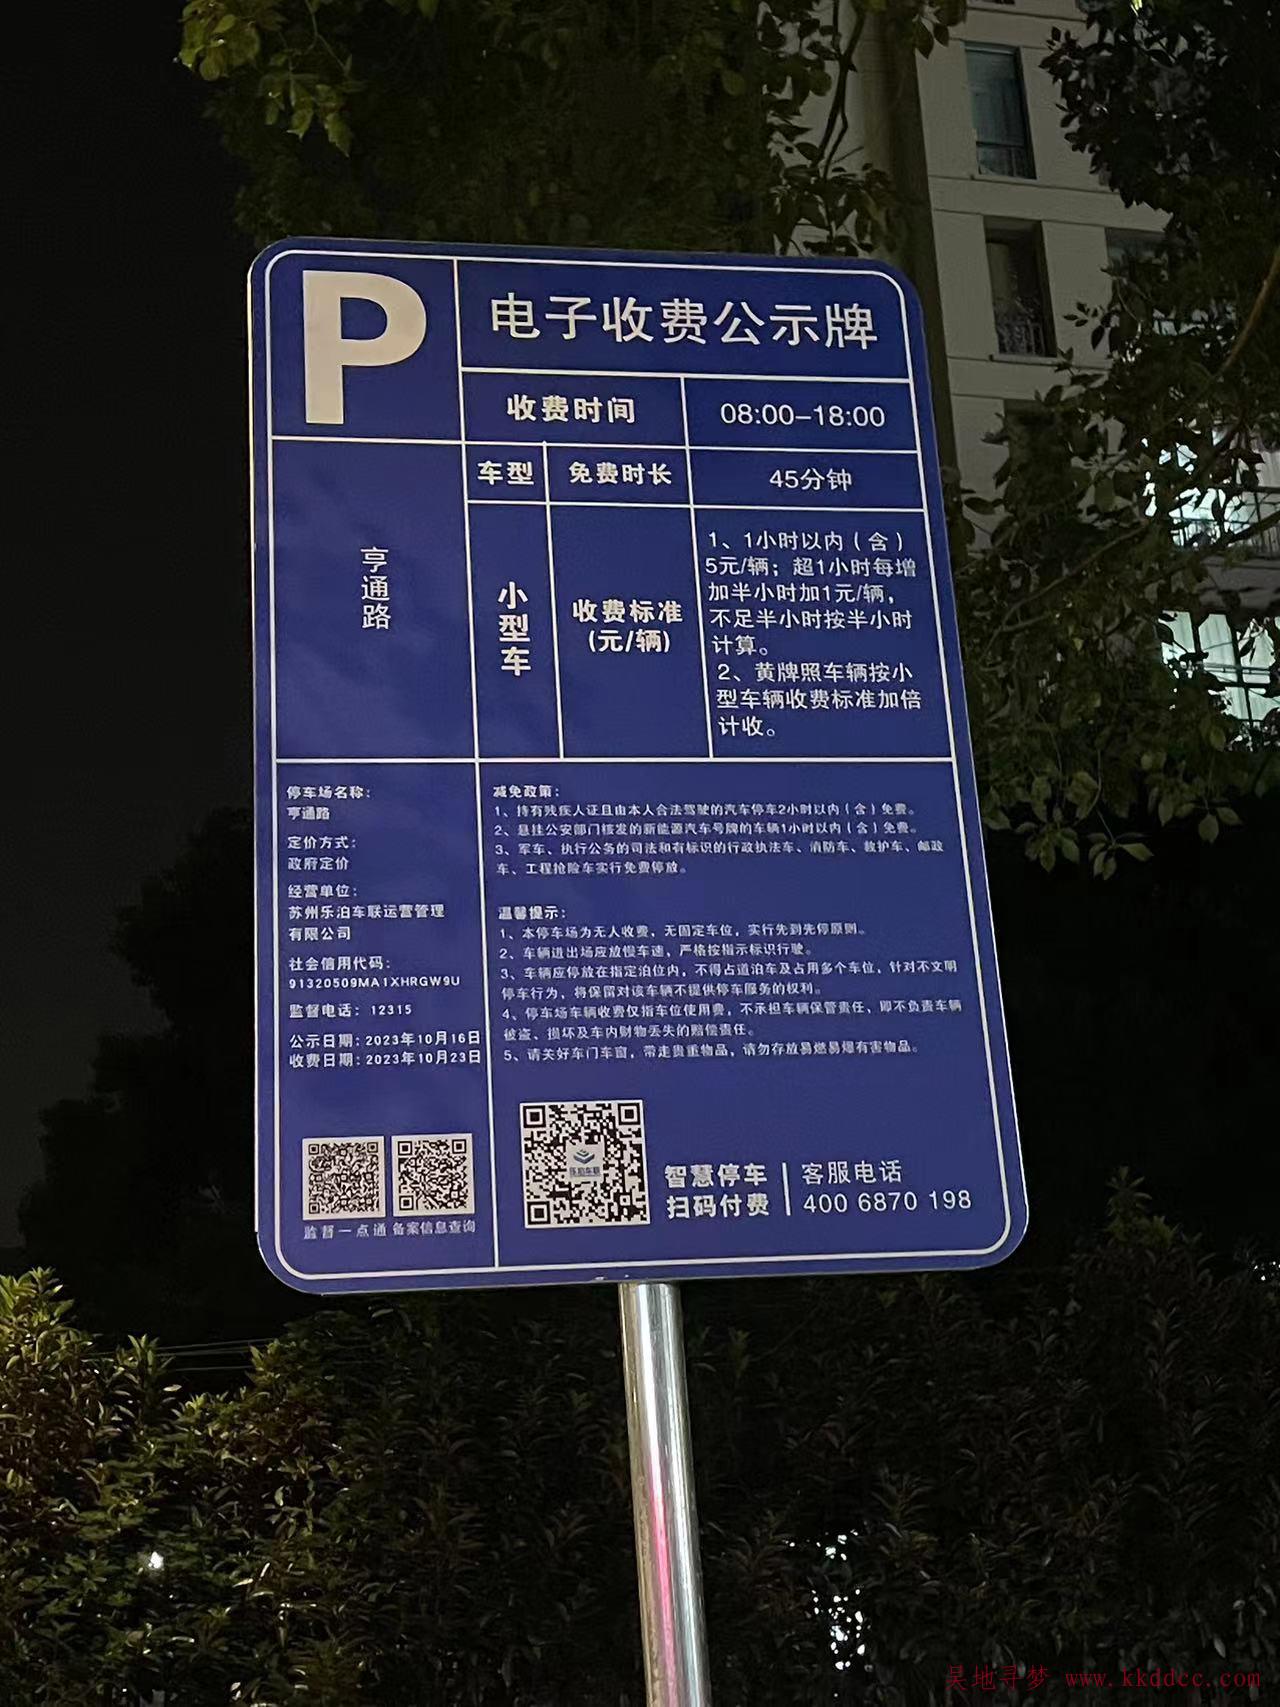 [停车收费]苏州吴江亨通路乐泊停车收费标准(8:00-18:00)